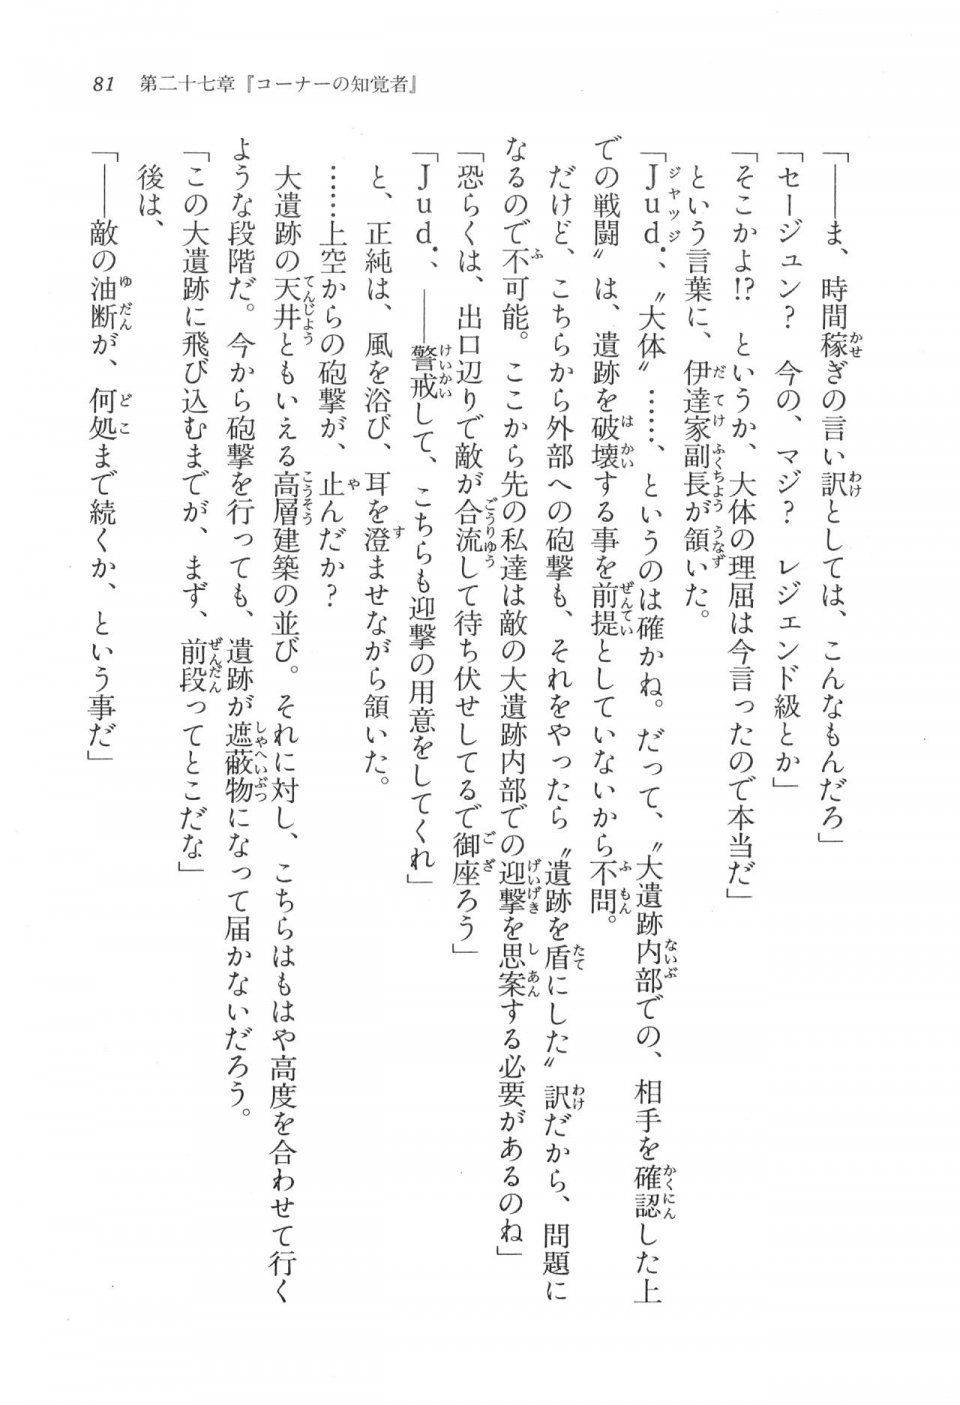 Kyoukai Senjou no Horizon LN Vol 17(7B) - Photo #81